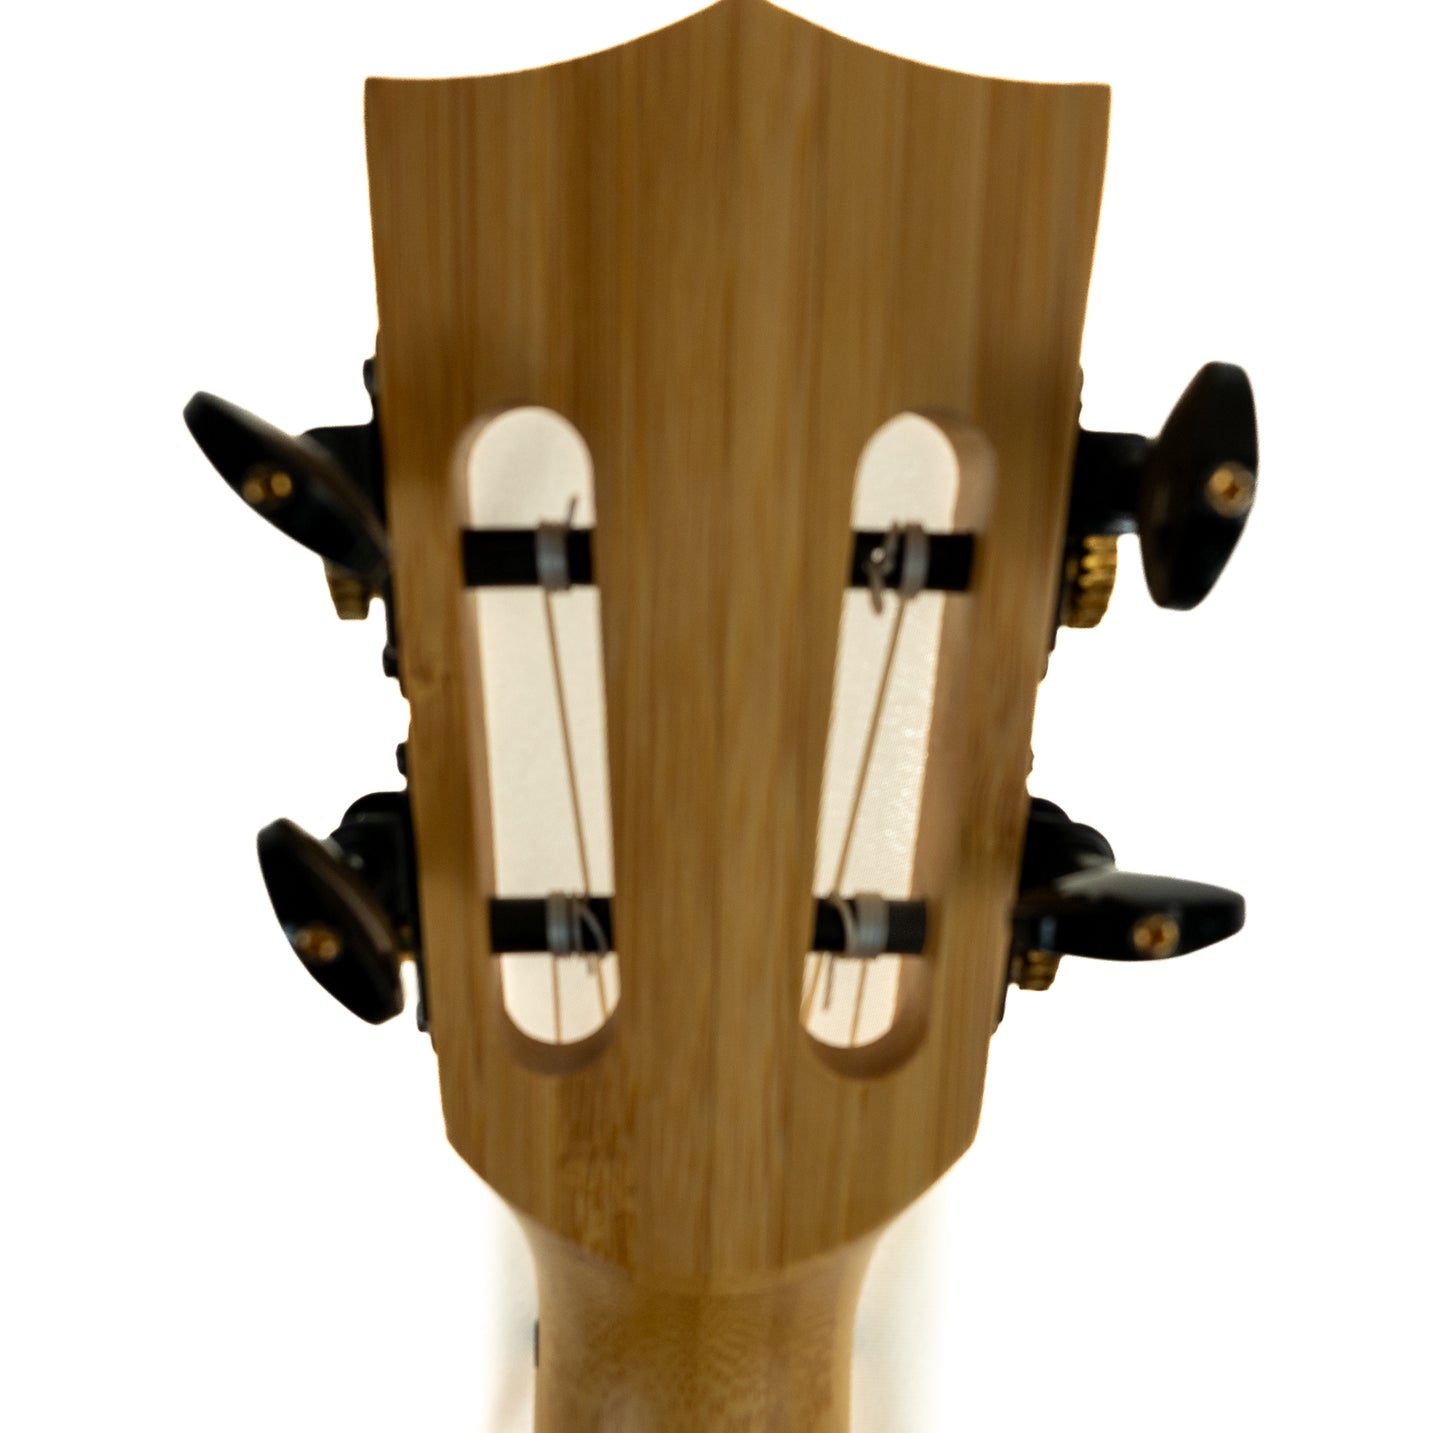 Kala all solid bamboo soprano ukulele